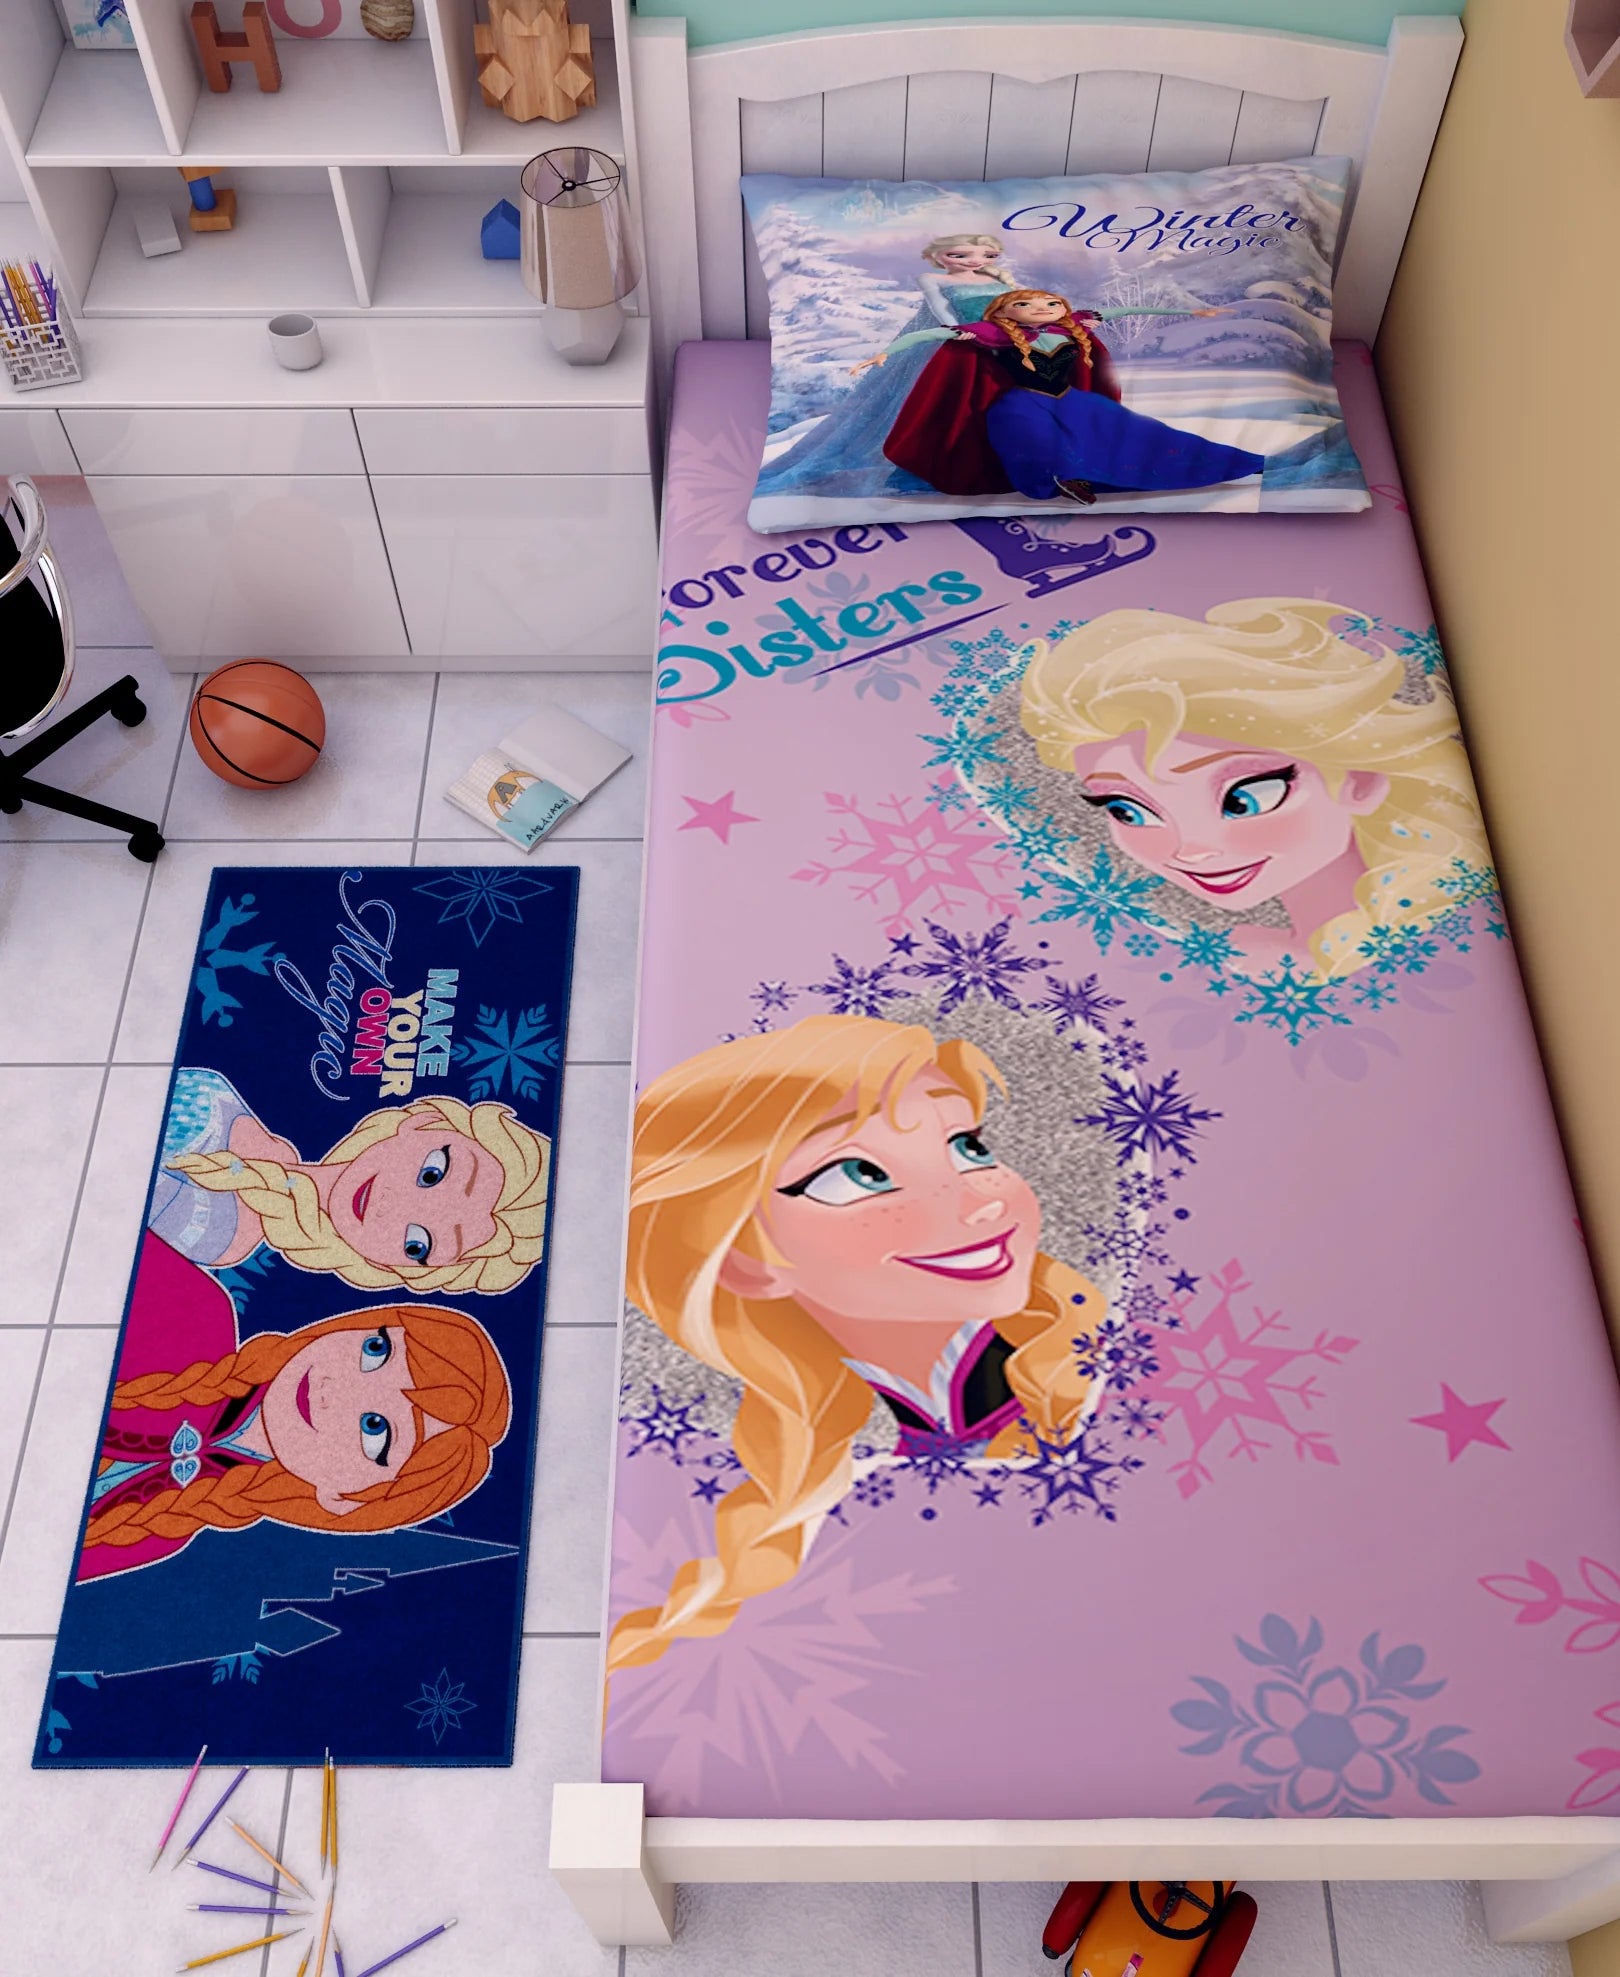 Disney Frozen Follow Your Heart Cotton Single Bedsheet Set With Runner Carpet